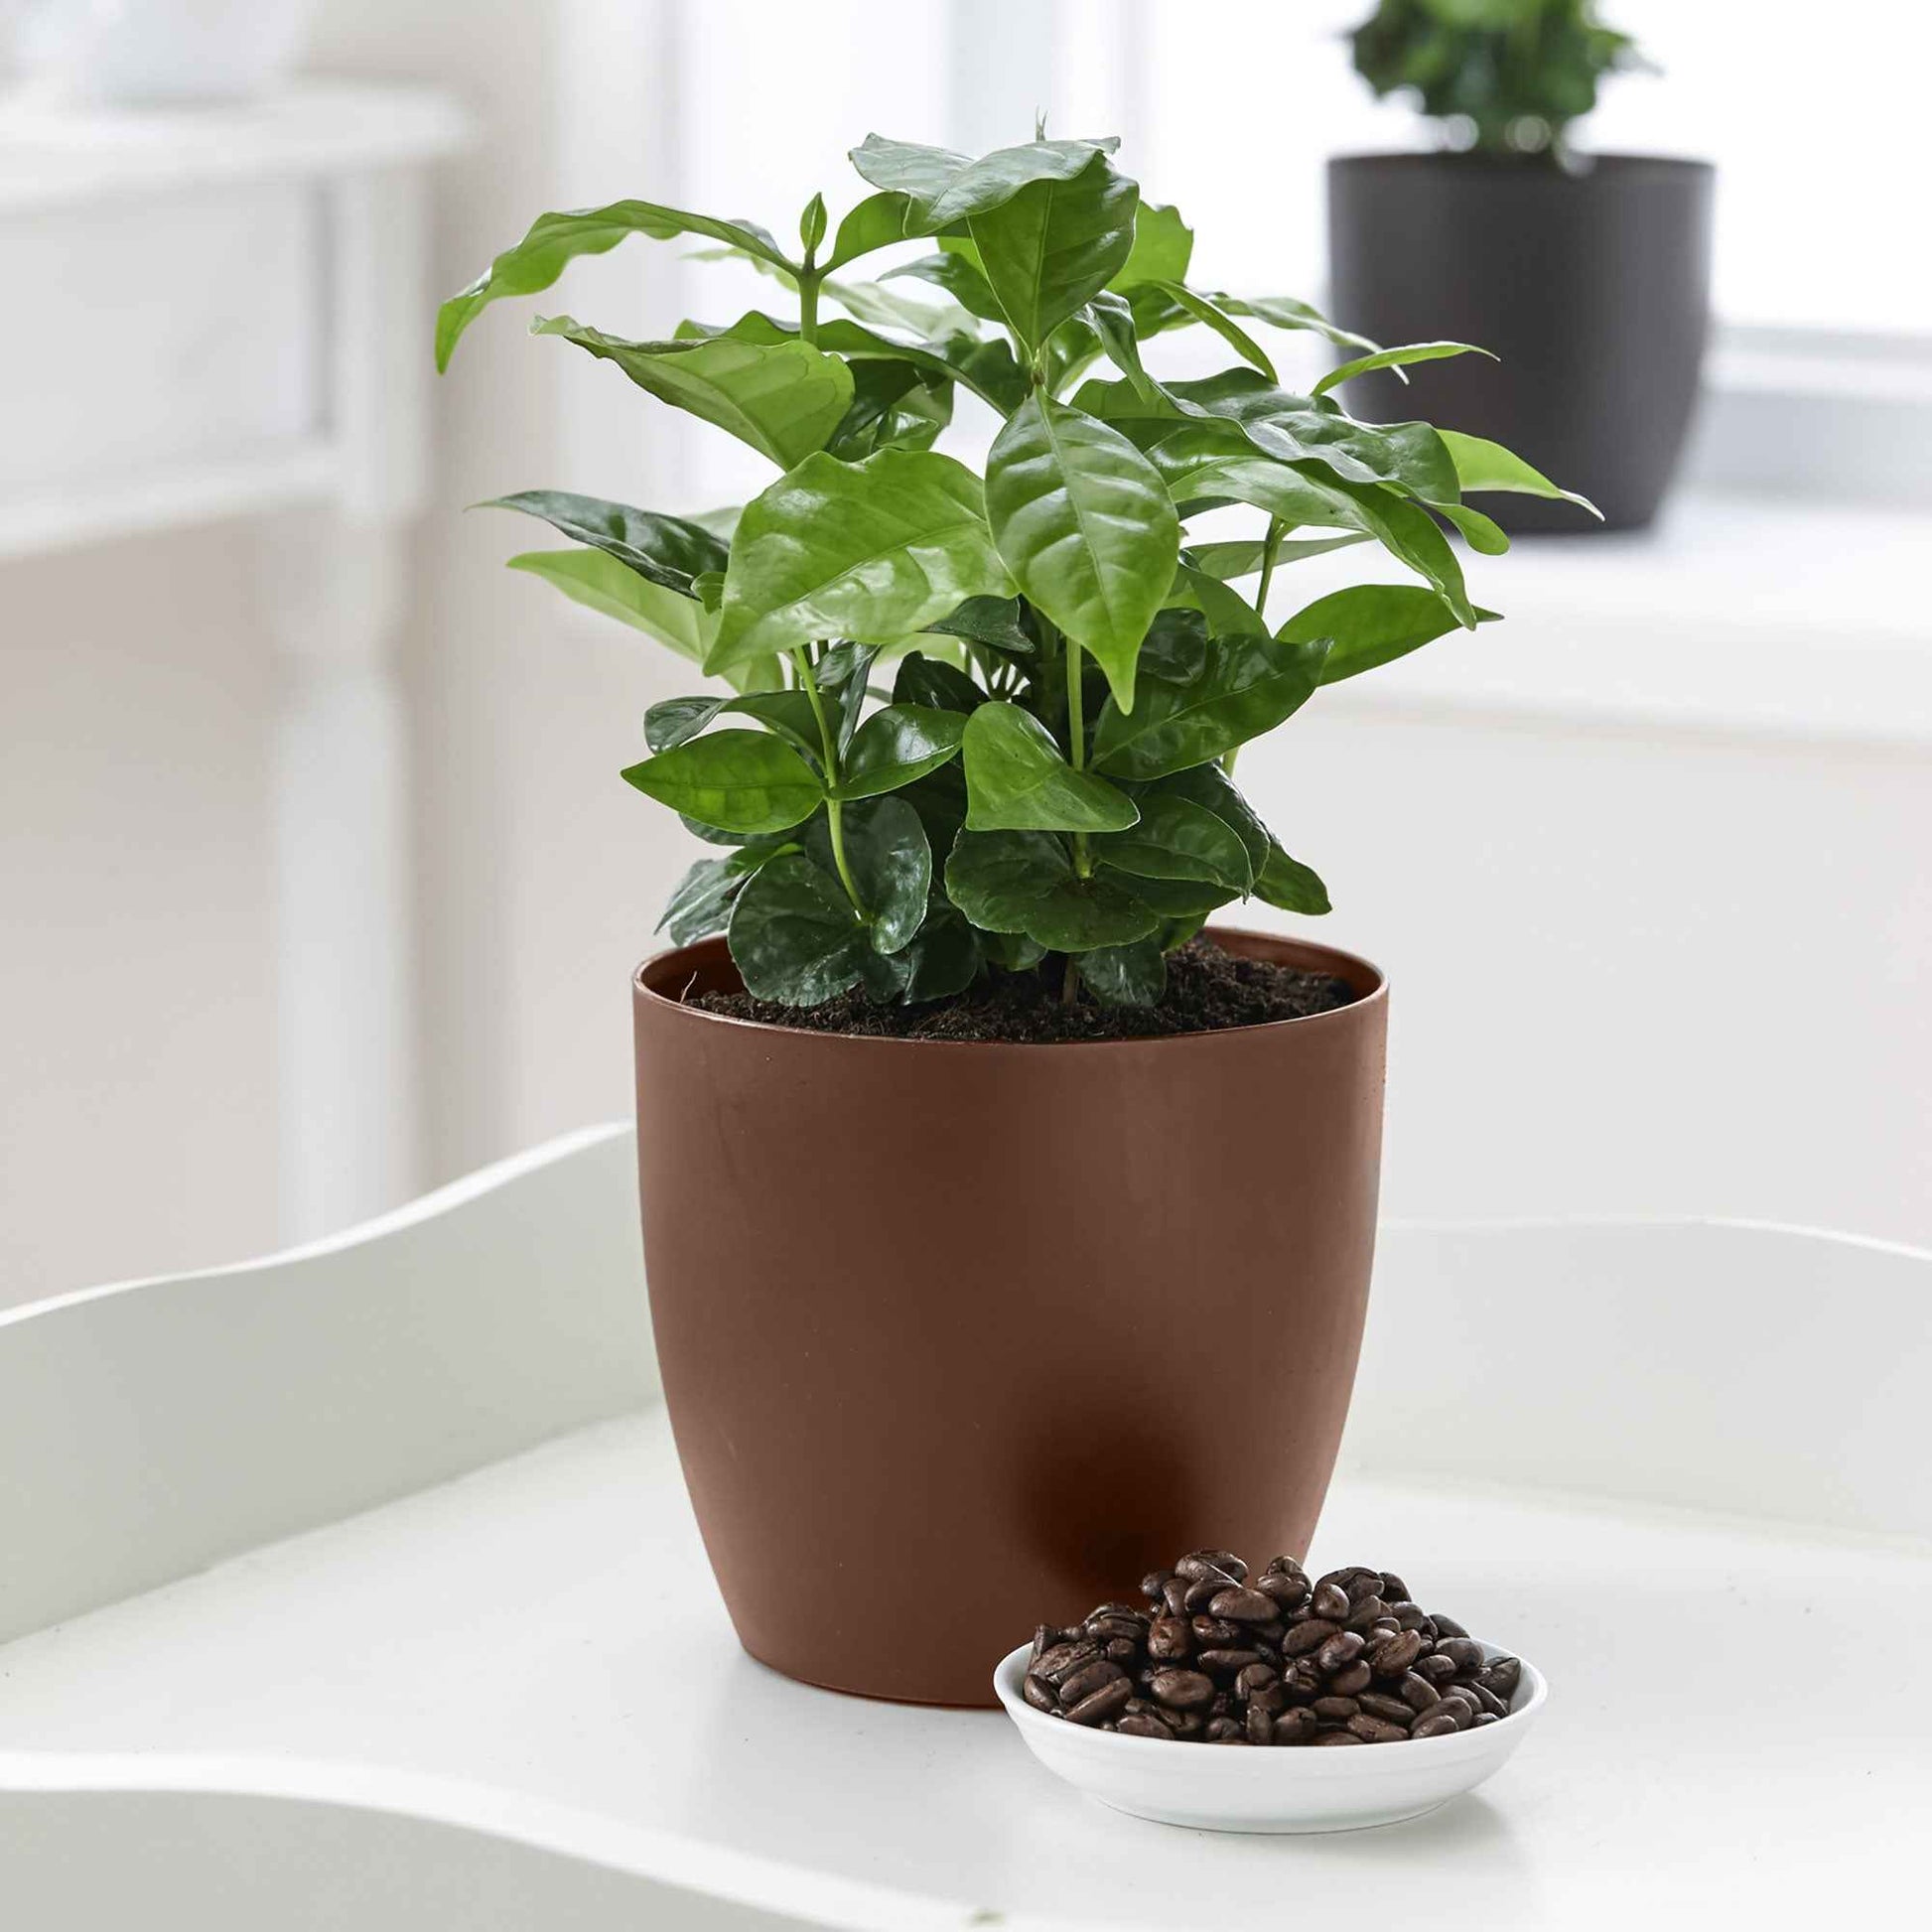 Koffieplant Coffea arabica incl. geurende sierpot - Binnenplanten in sierpot